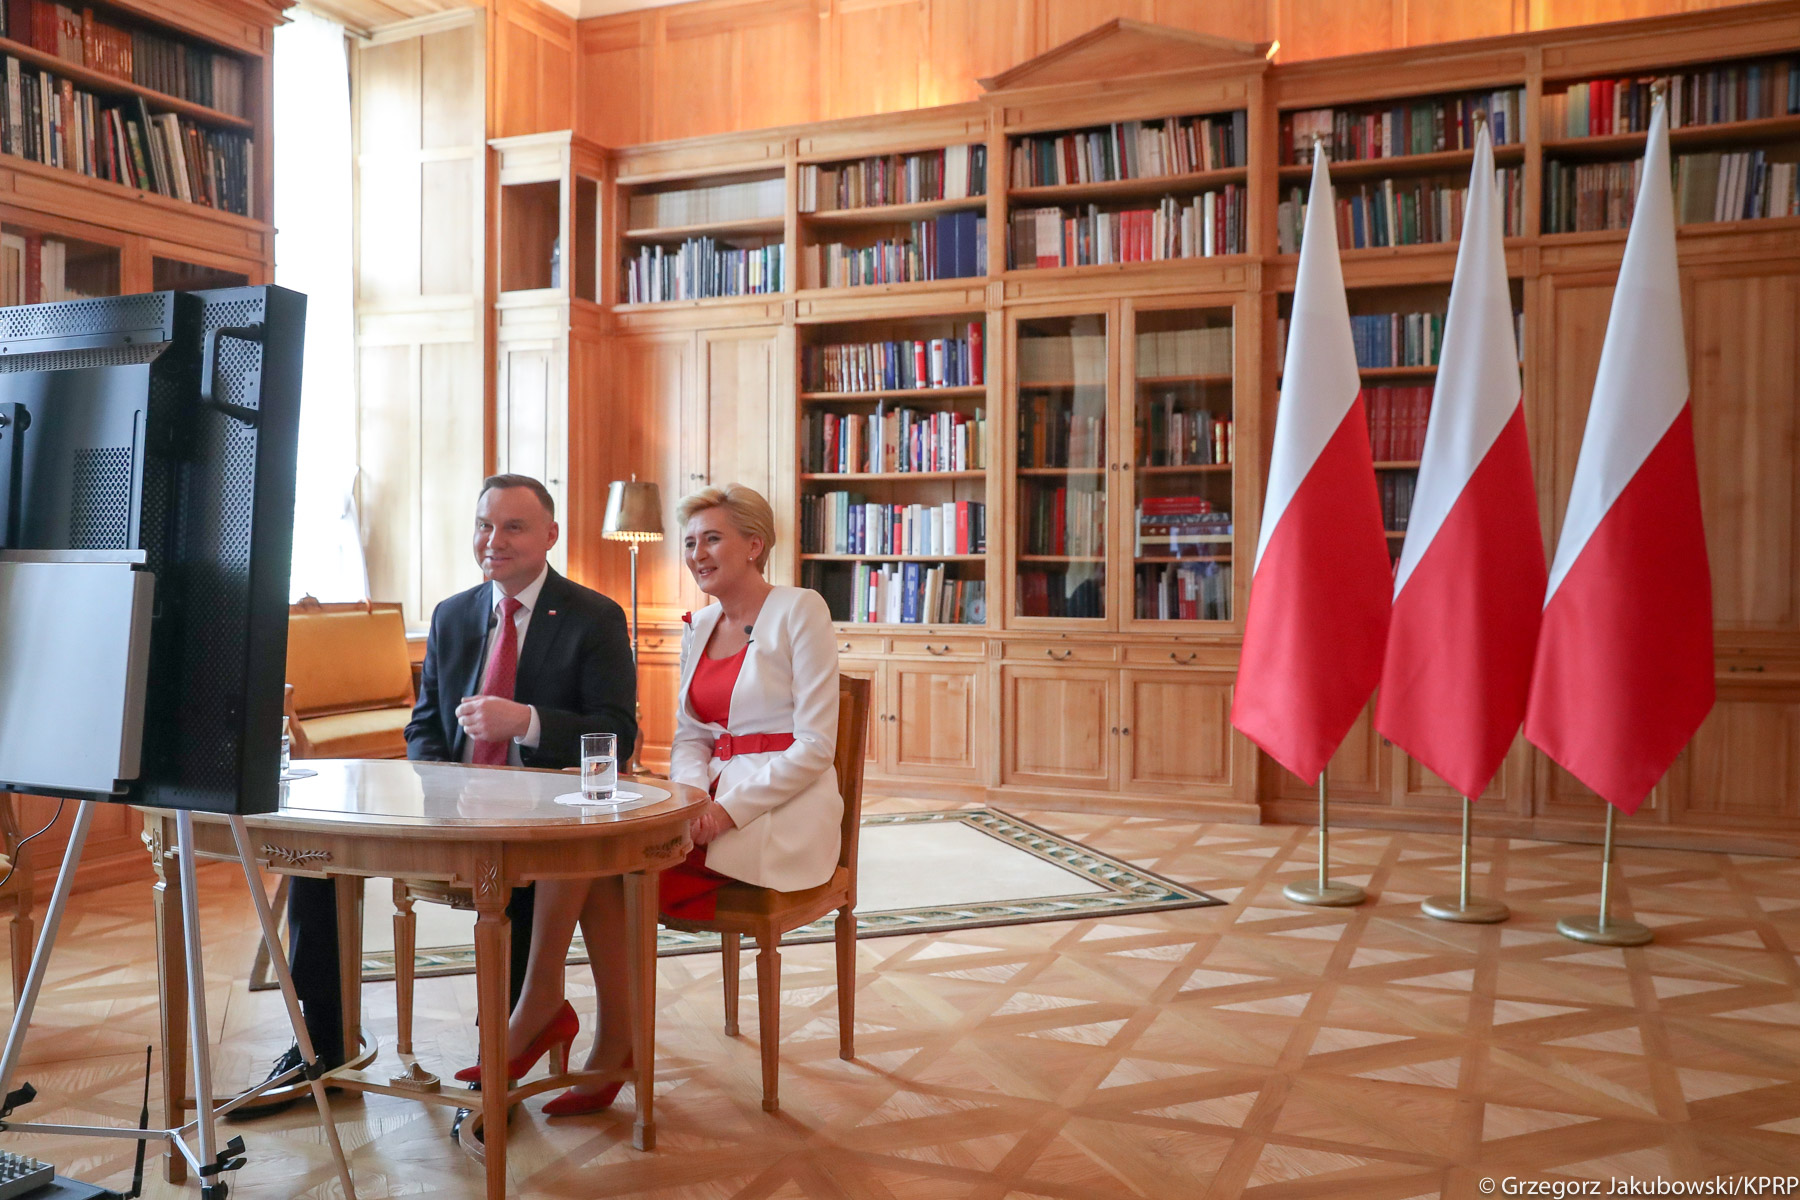 День полонії та поляків за кордоном – cолідарність і спільнота